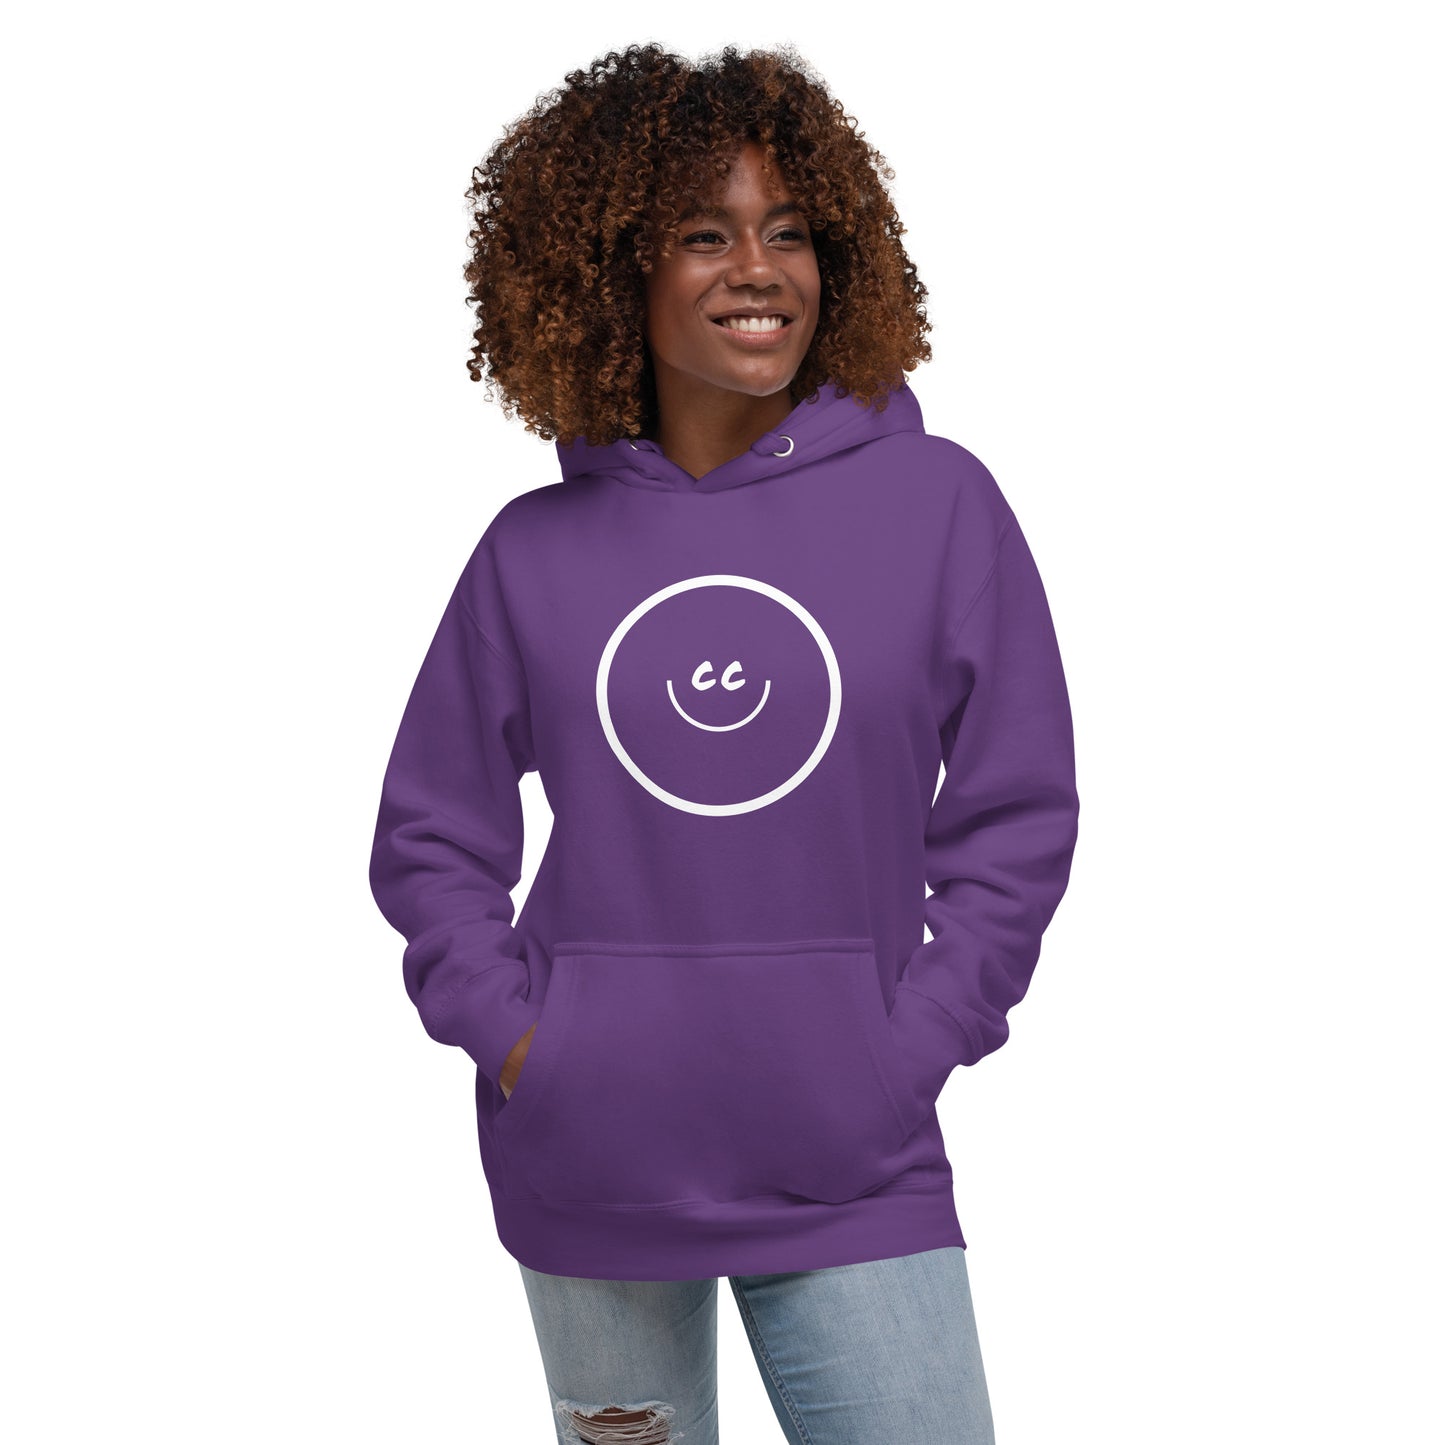 Big Smile Fleece in Purple - Hoodie